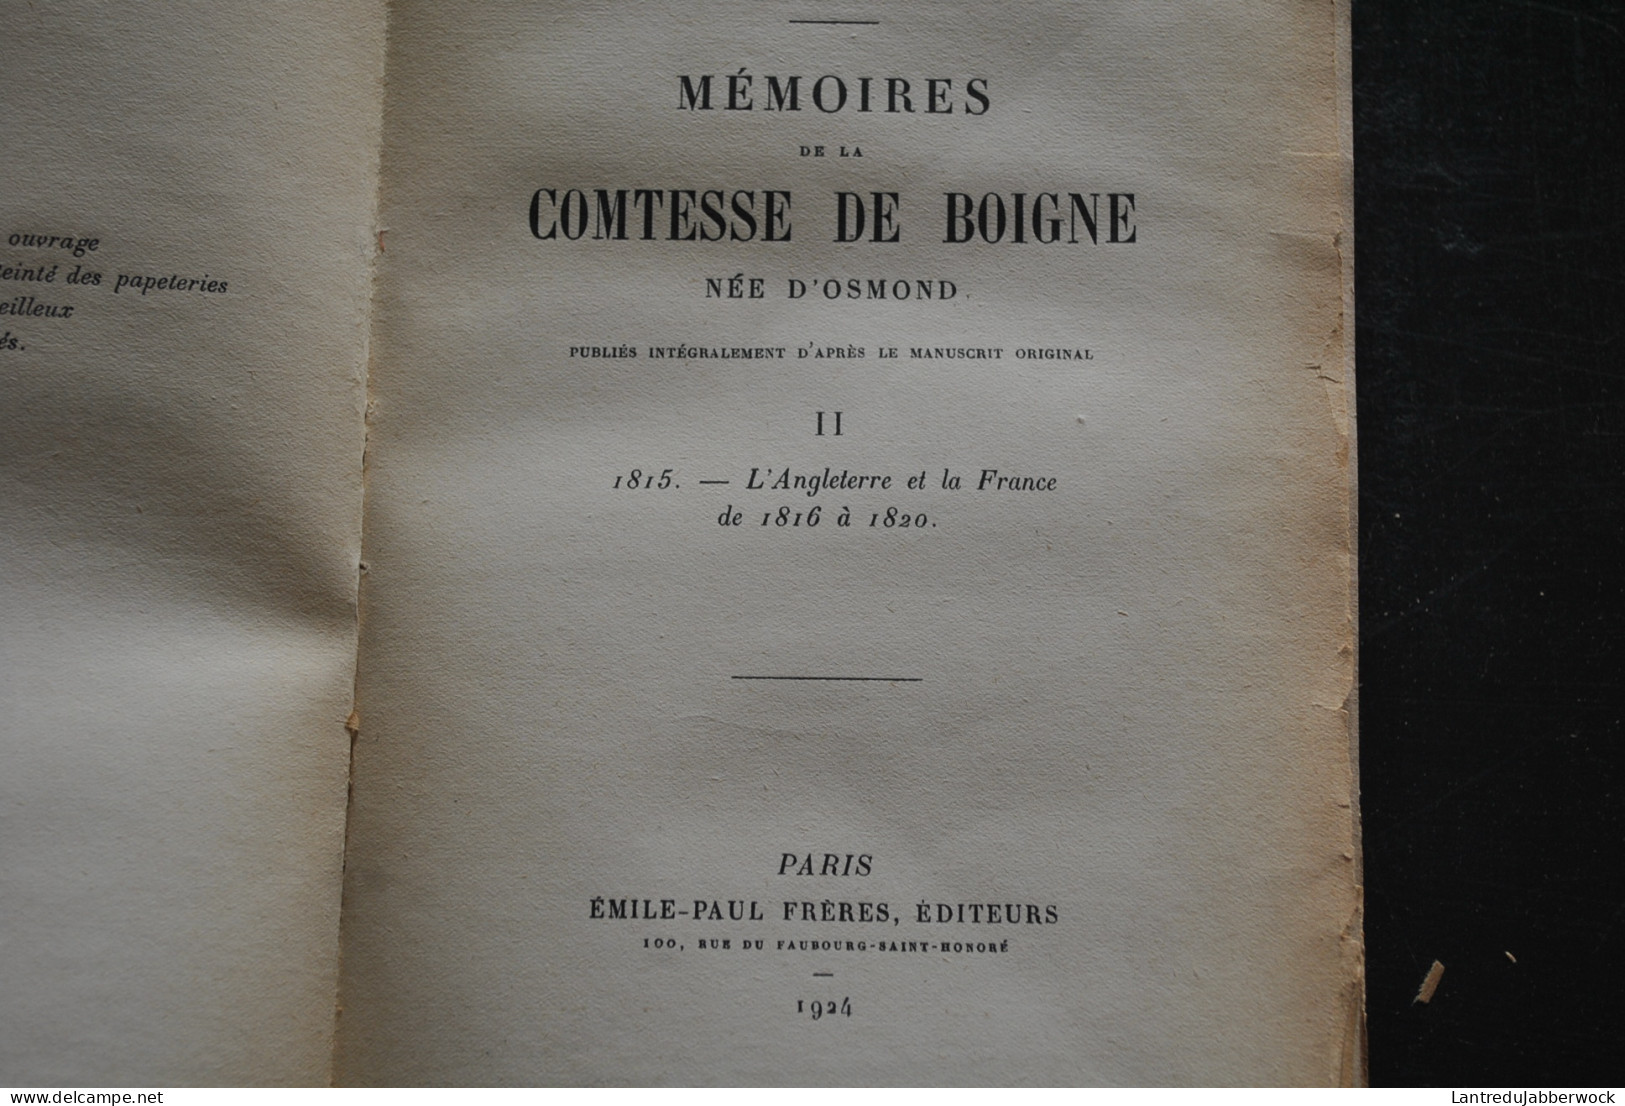 Mémoires de la Comtesse de Boigne née d'Osmond Récits d'une tante Emile-Paul Frères 1923 1925 Complet en 5 tomes RARE 